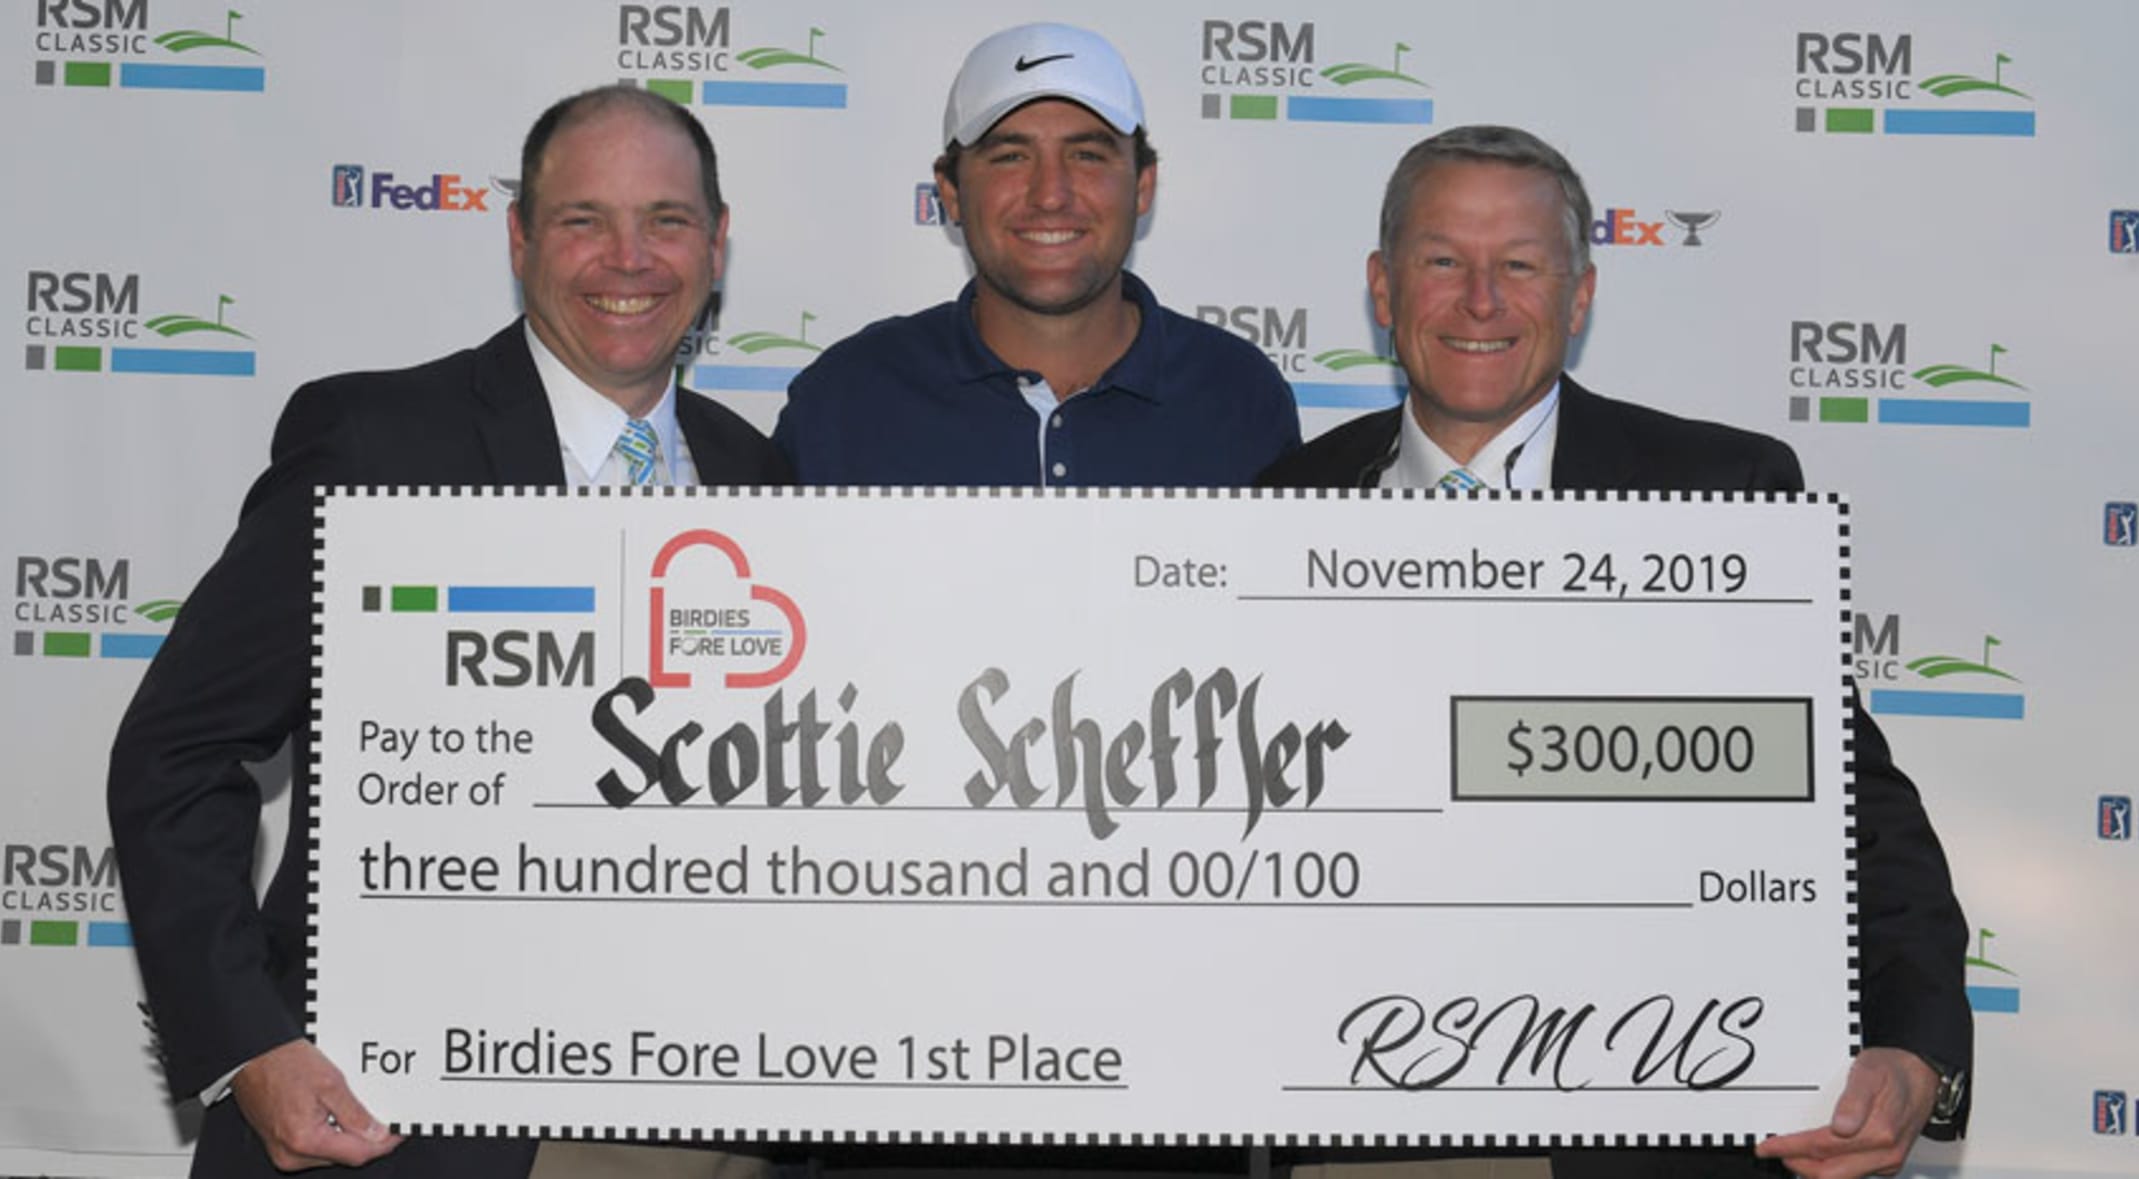 Scottie Scheffler wins $300,000 through RSM Birdies Fore Love program